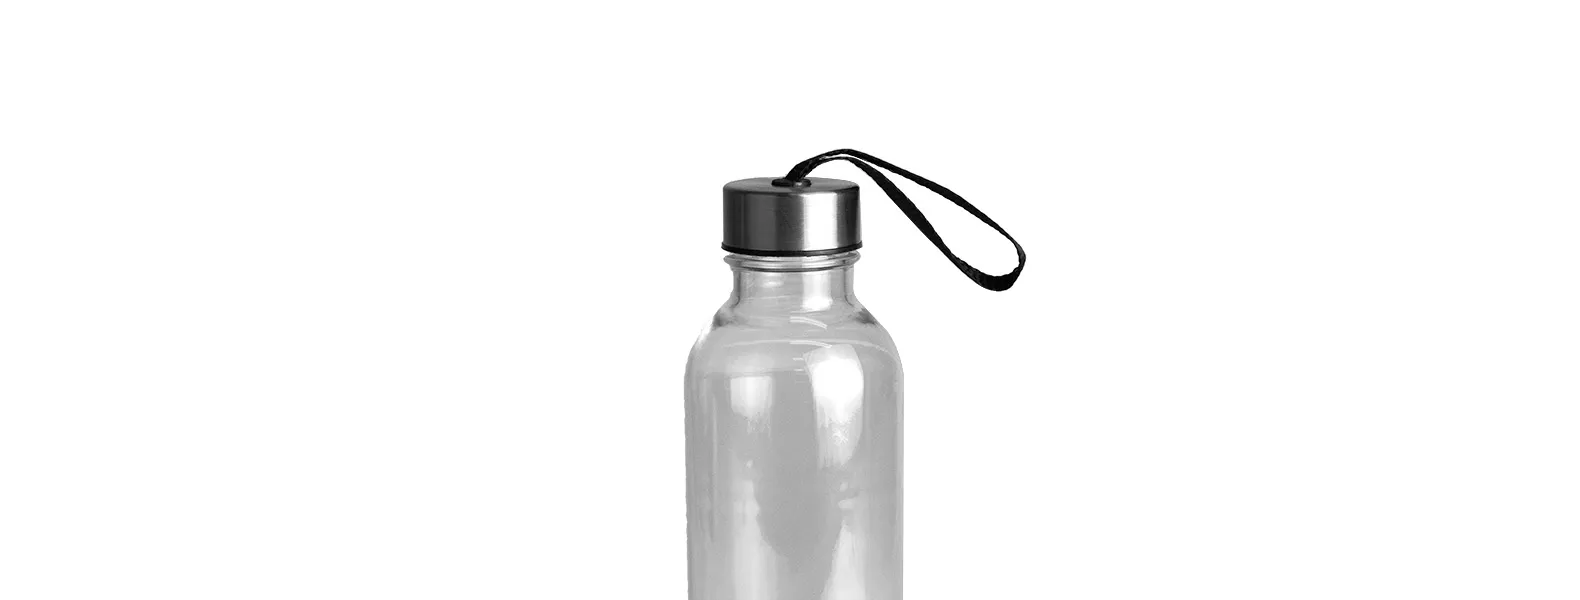 Garrafa transparente em PET. Conta com tampa rosqueável em Aço Inox com cordão. Livre de BPA. Capacidade: 600ml